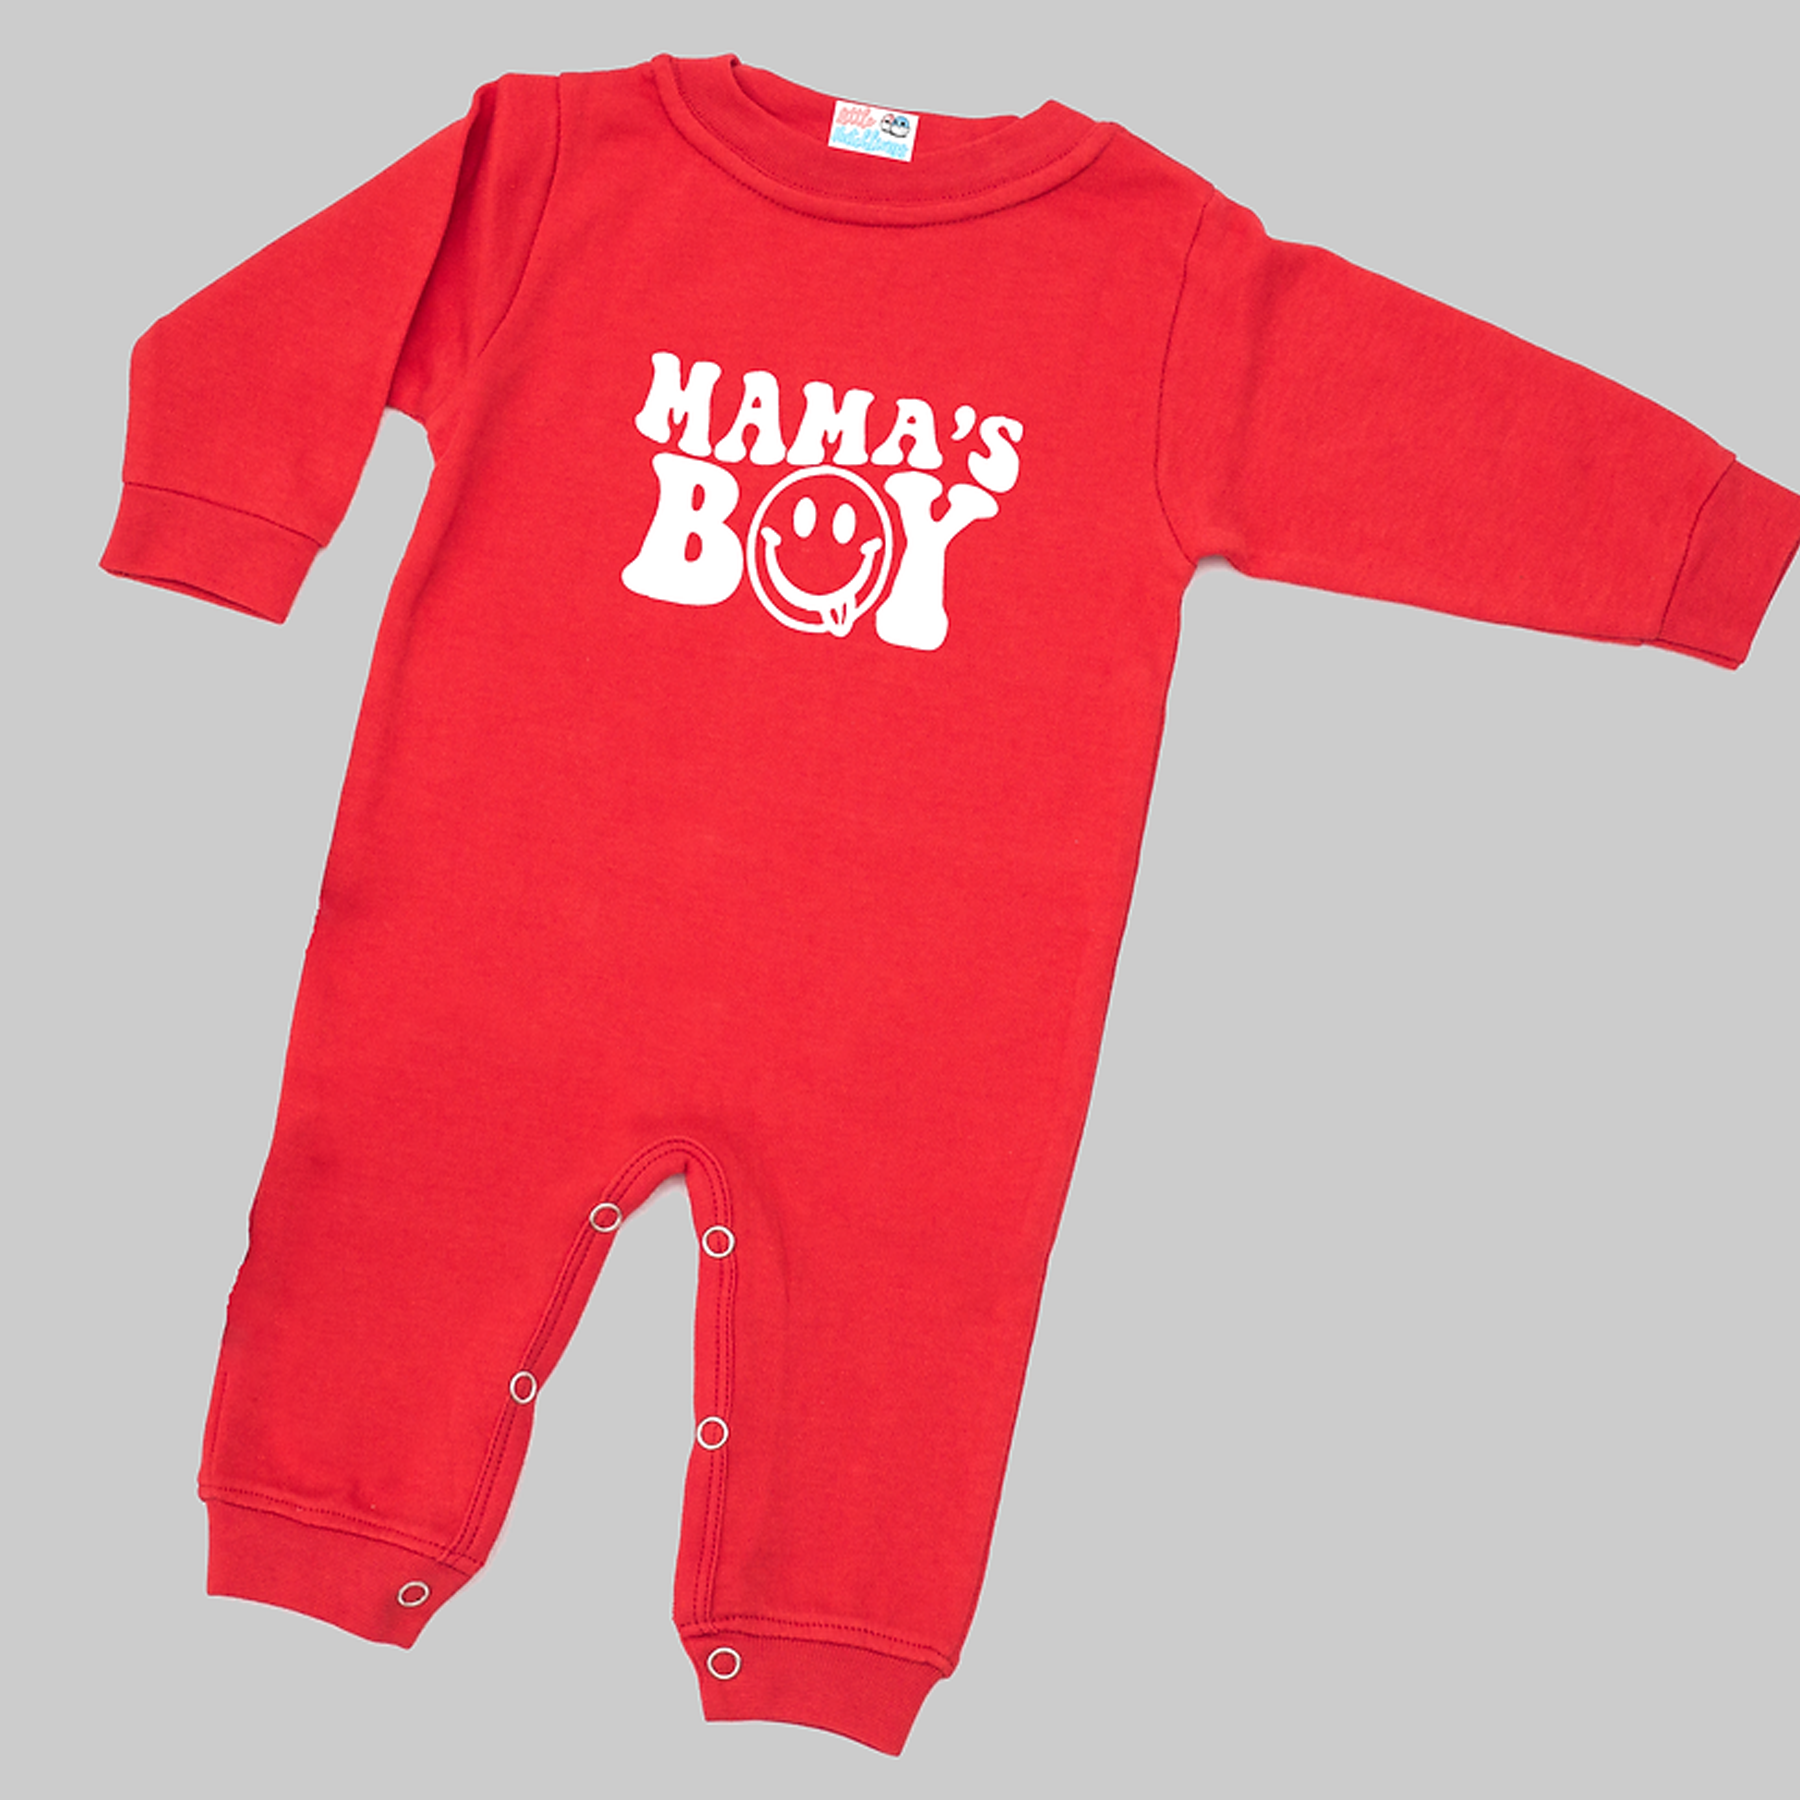 Mama's Boy  - Red Onesie / Romper / Tshirt